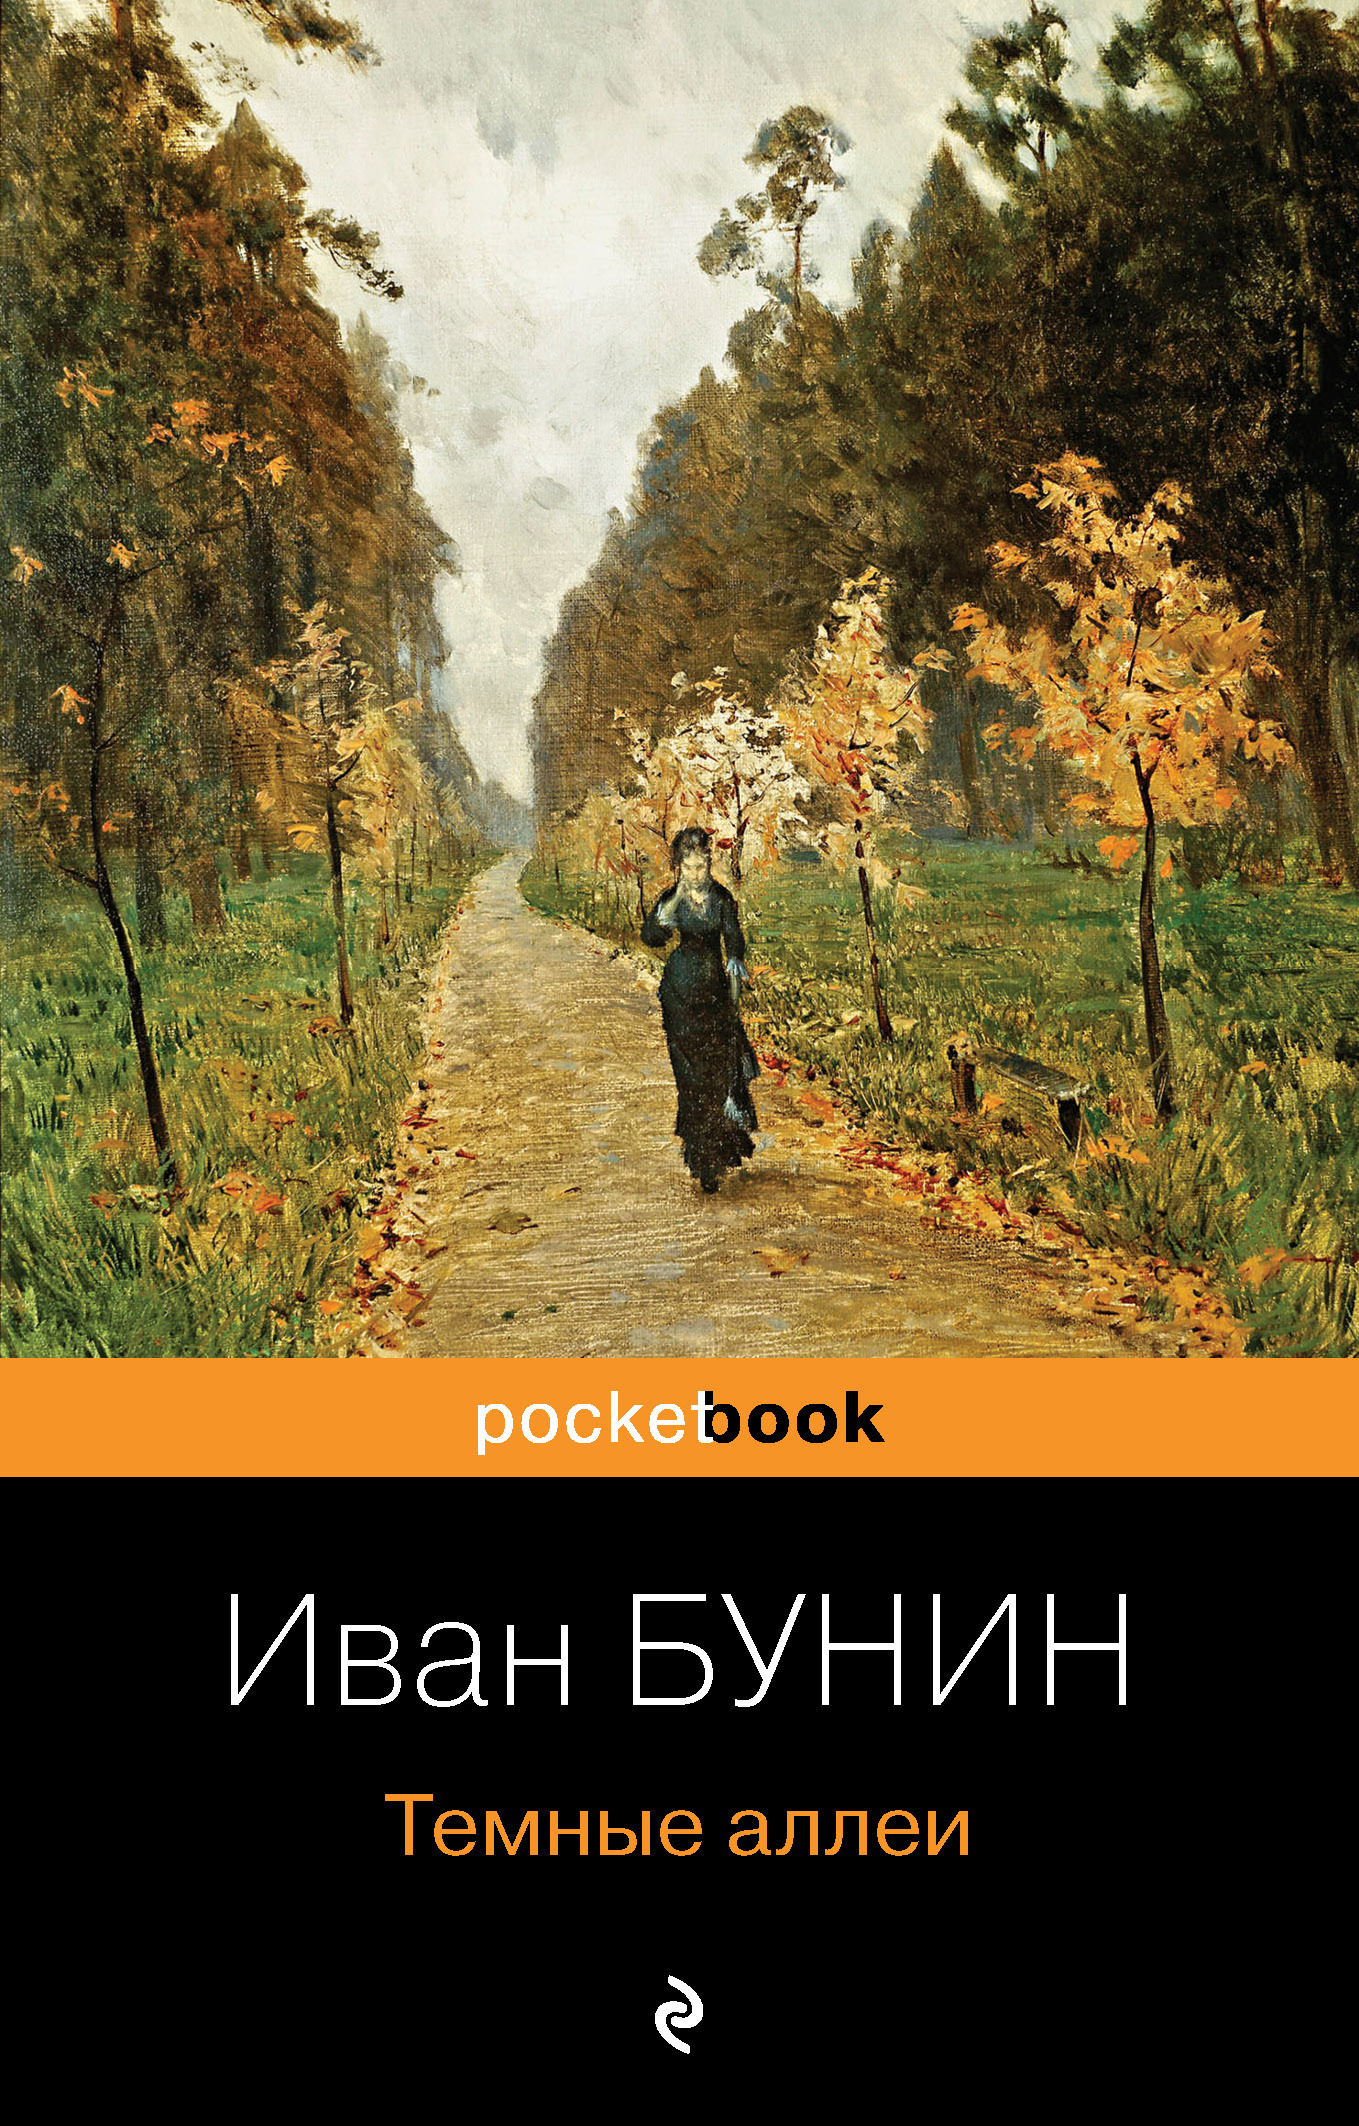 Книга Темные аллеи из серии , созданная Иван Бунин, может относится к жанру Русская классика. Стоимость электронной книги Темные аллеи с идентификатором 621185 составляет 5.99 руб.